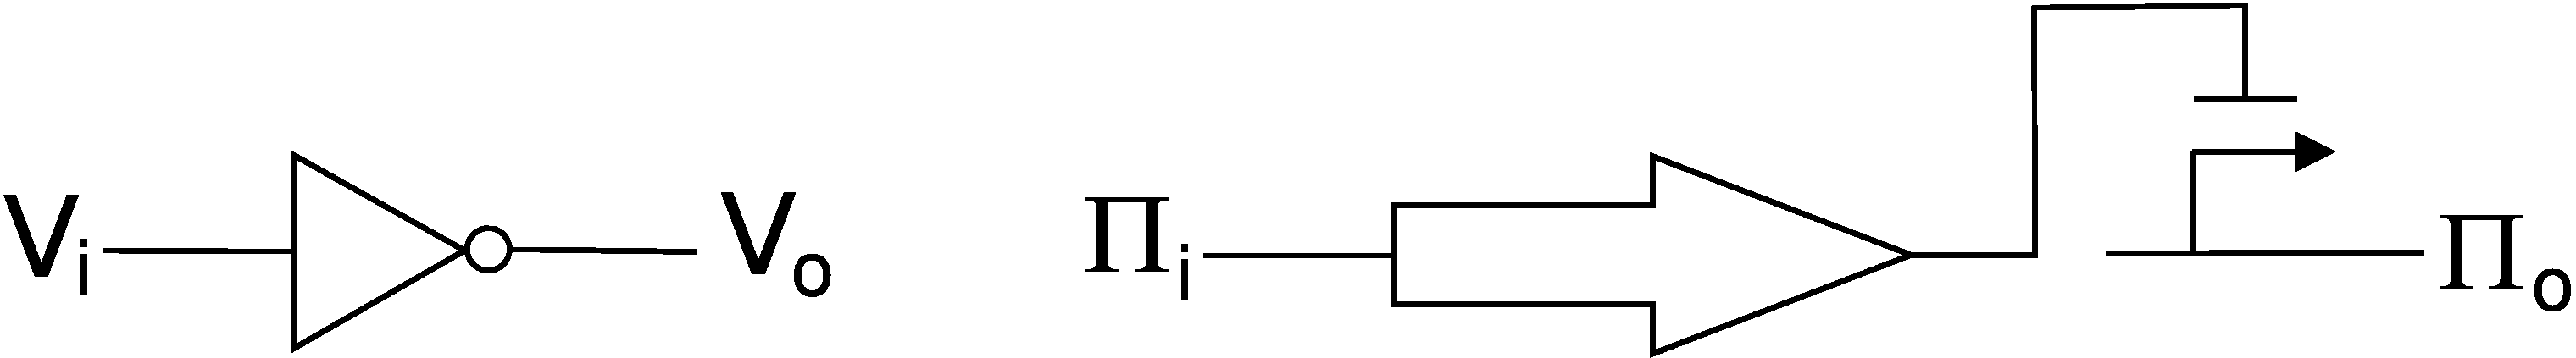 Inverter in typical digital logic and transcription-based digital logic